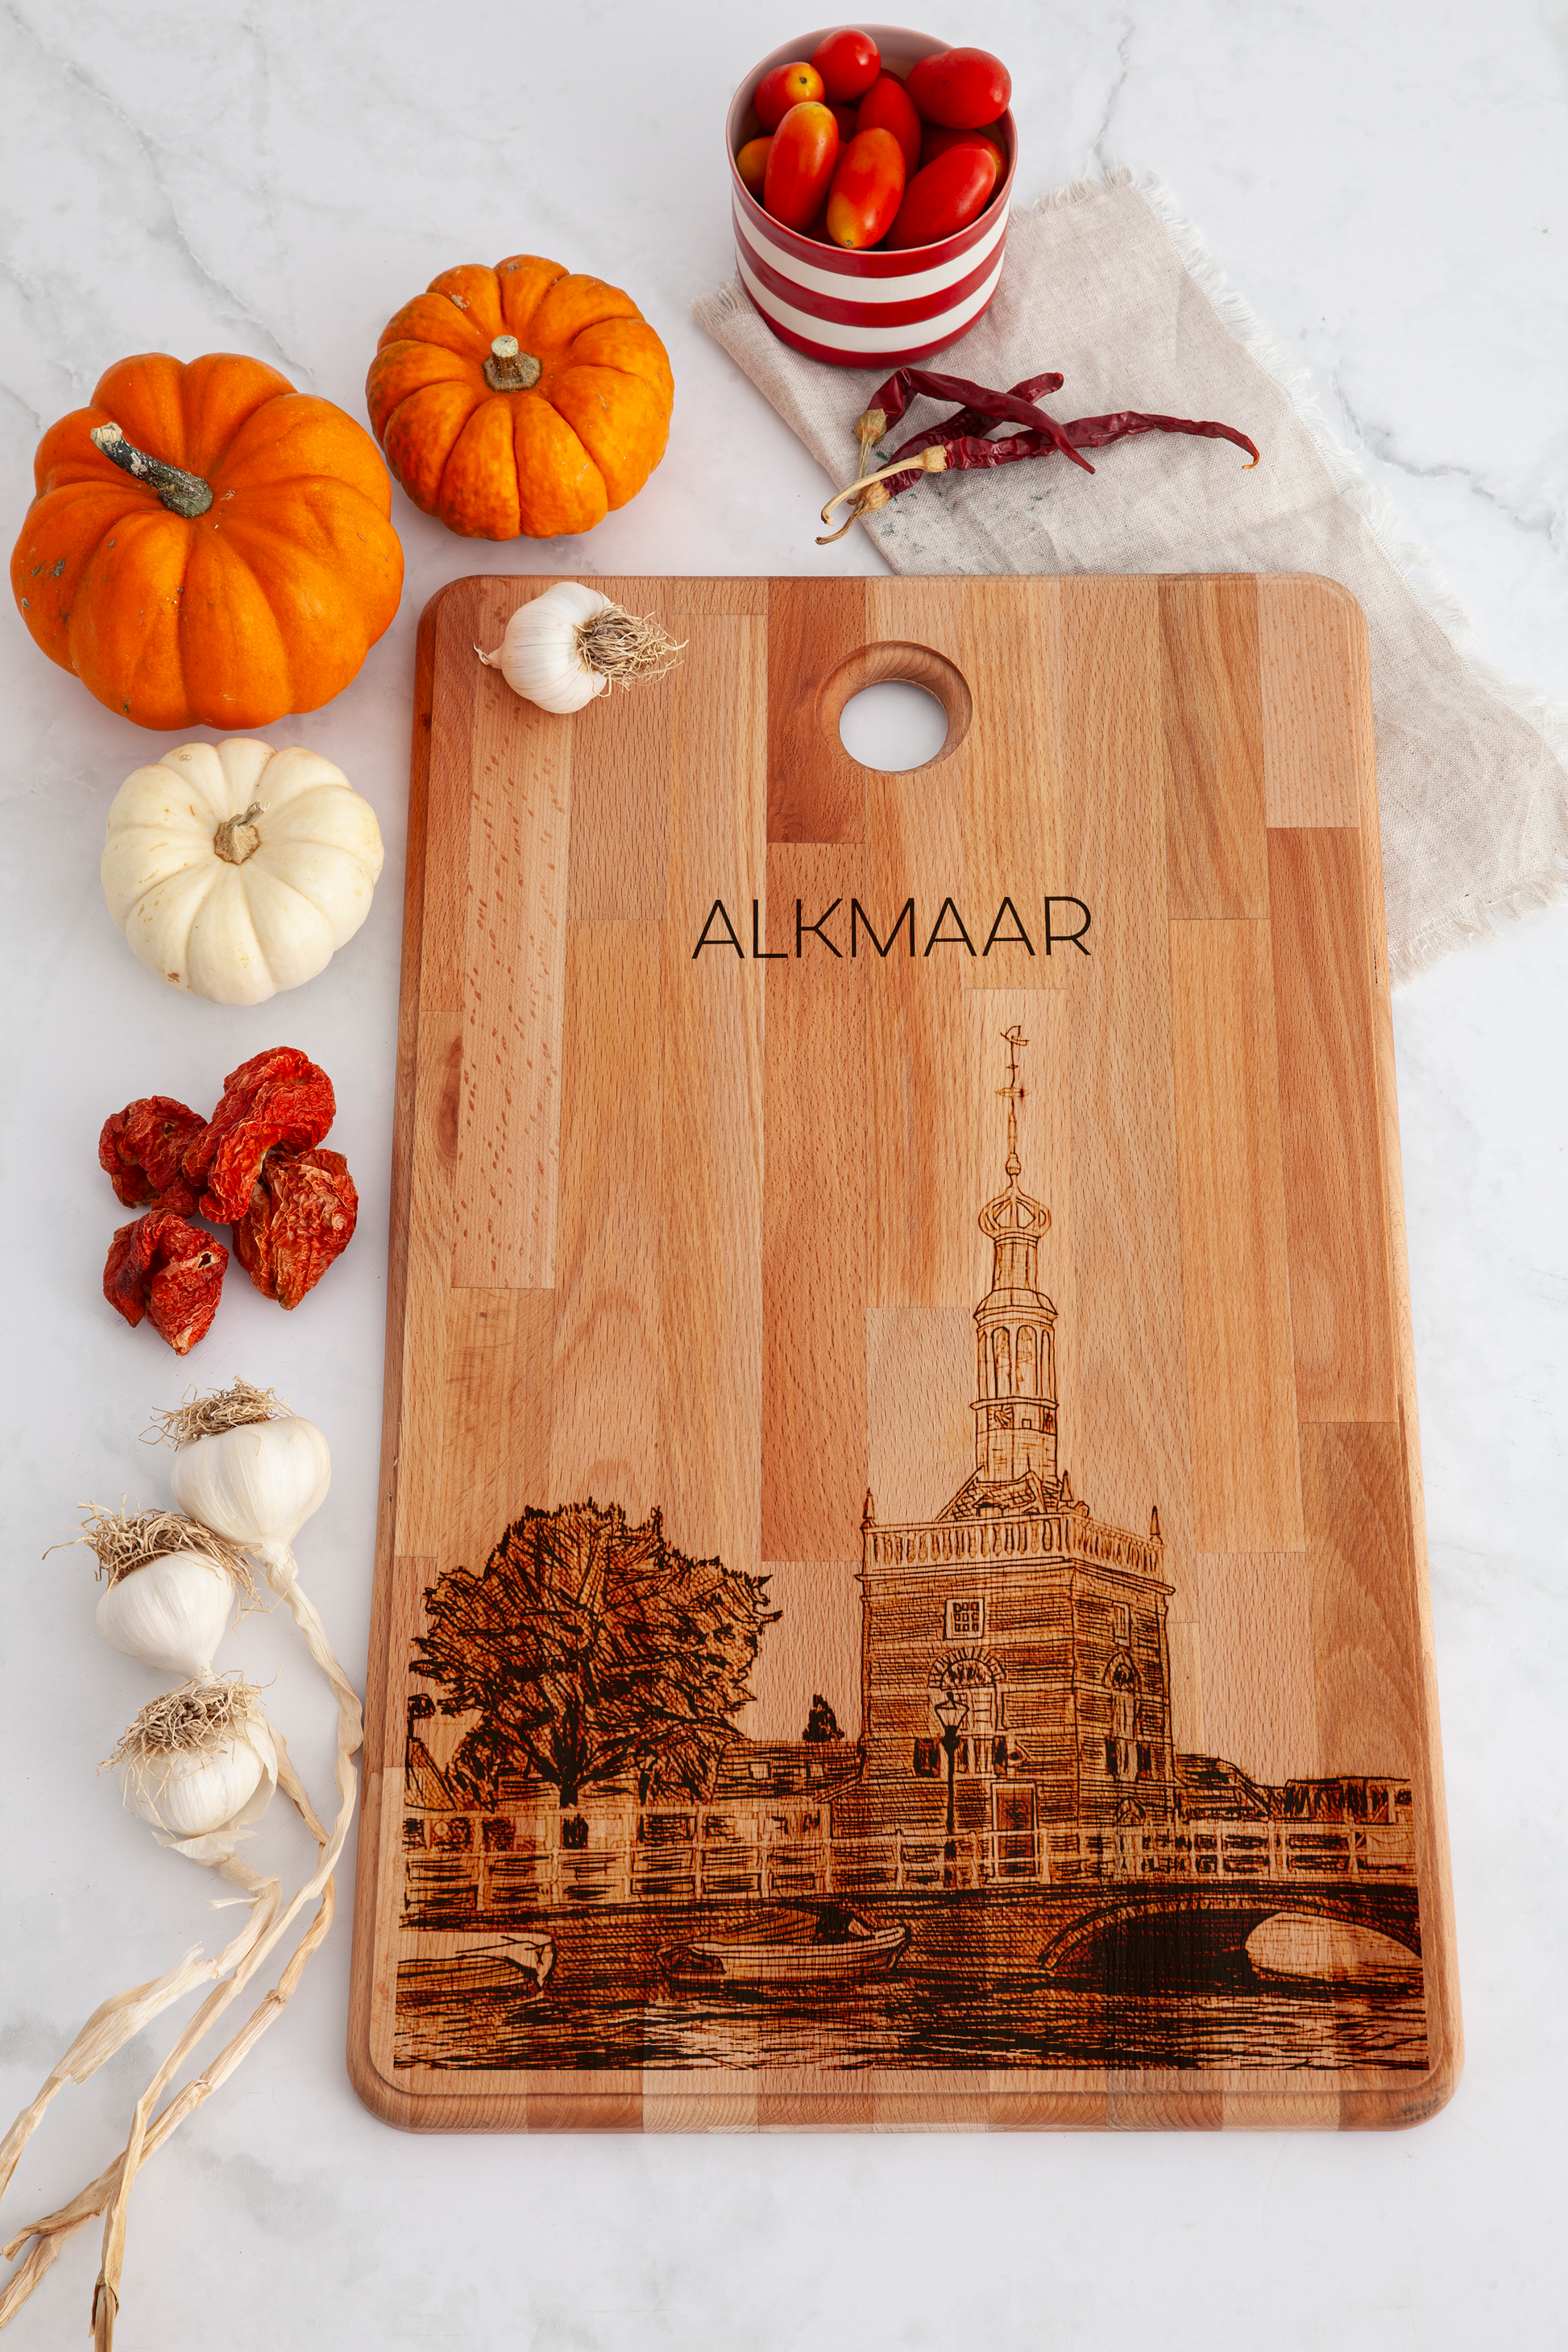 Alkmaar, De Friese Poort, cutting board, on countertop